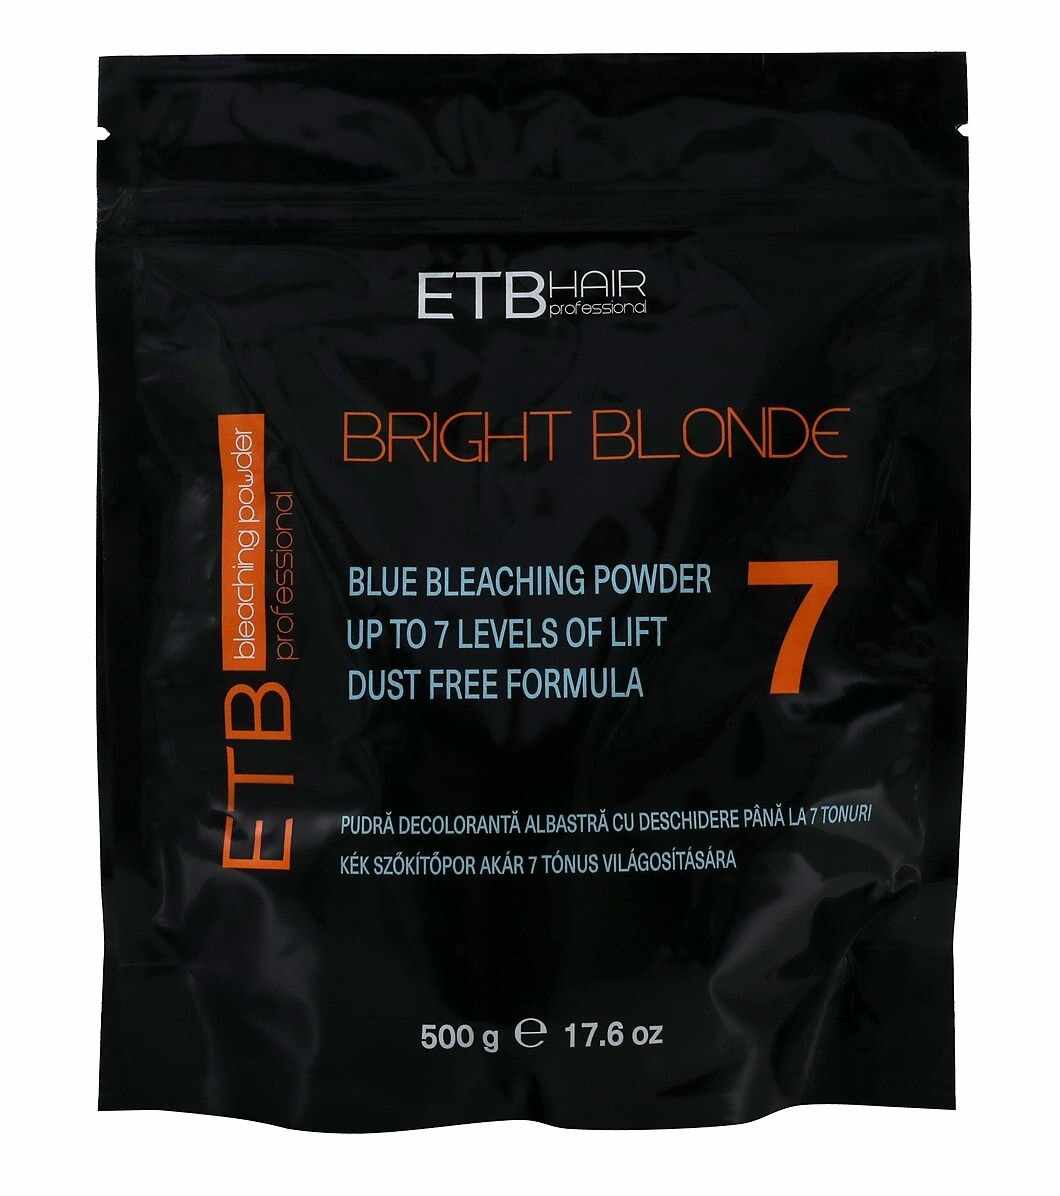 Pudra Decoloranta Albastra 7 Tonuri 500g, ETB Hair Professional Bright Blonde